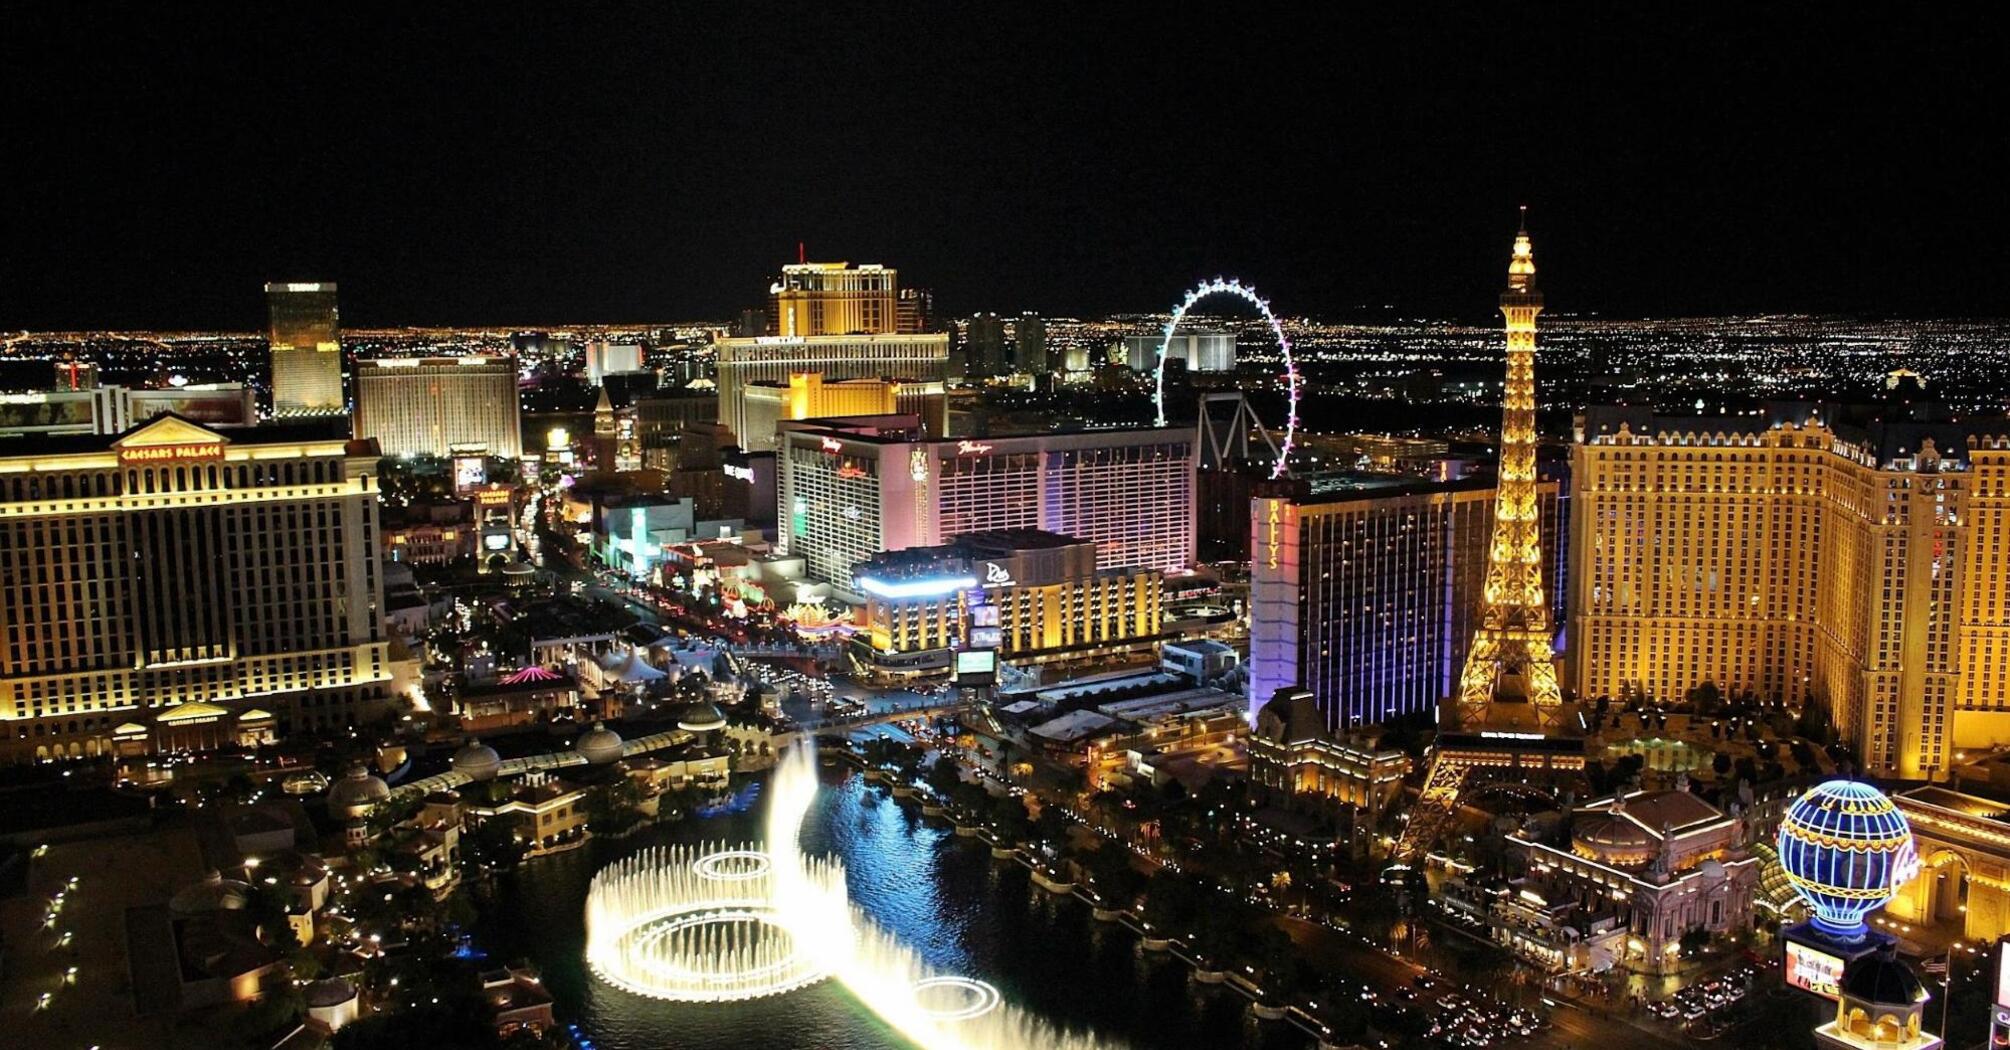 Night Las Vegas with fountains